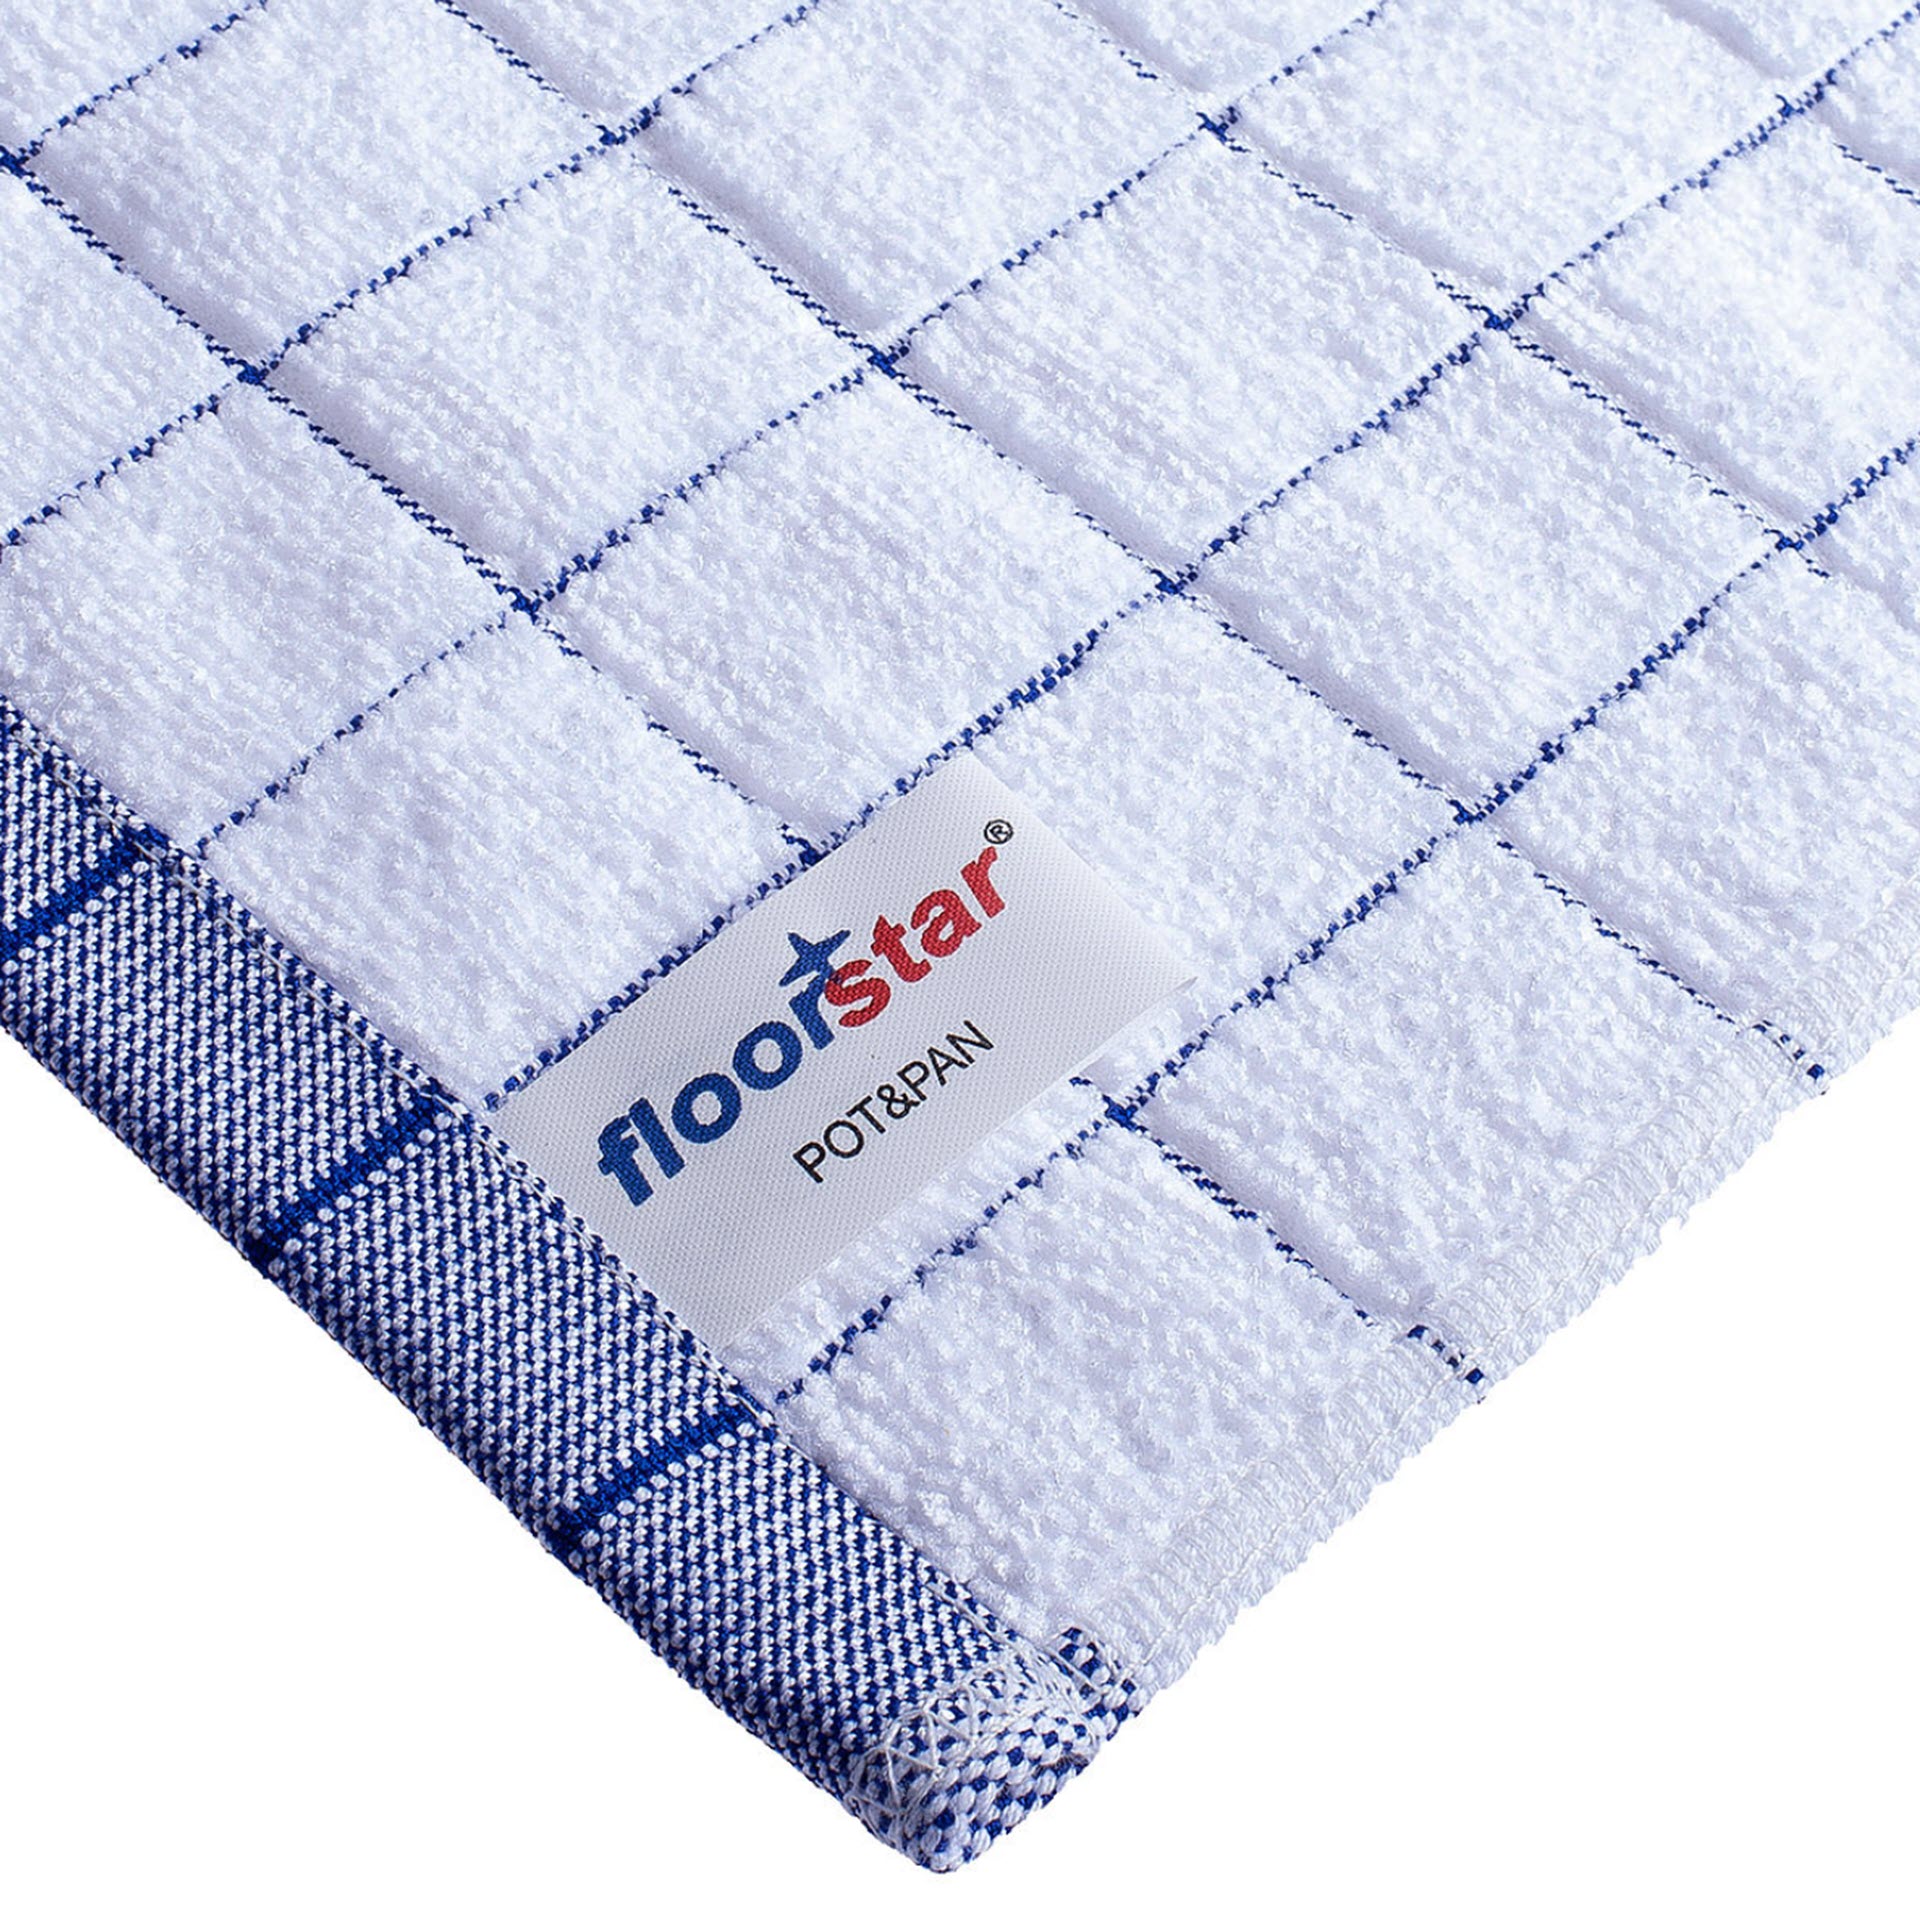 Floorstar Profi Microfaser - Geschirrtuch POT & PAN - 5er Pack